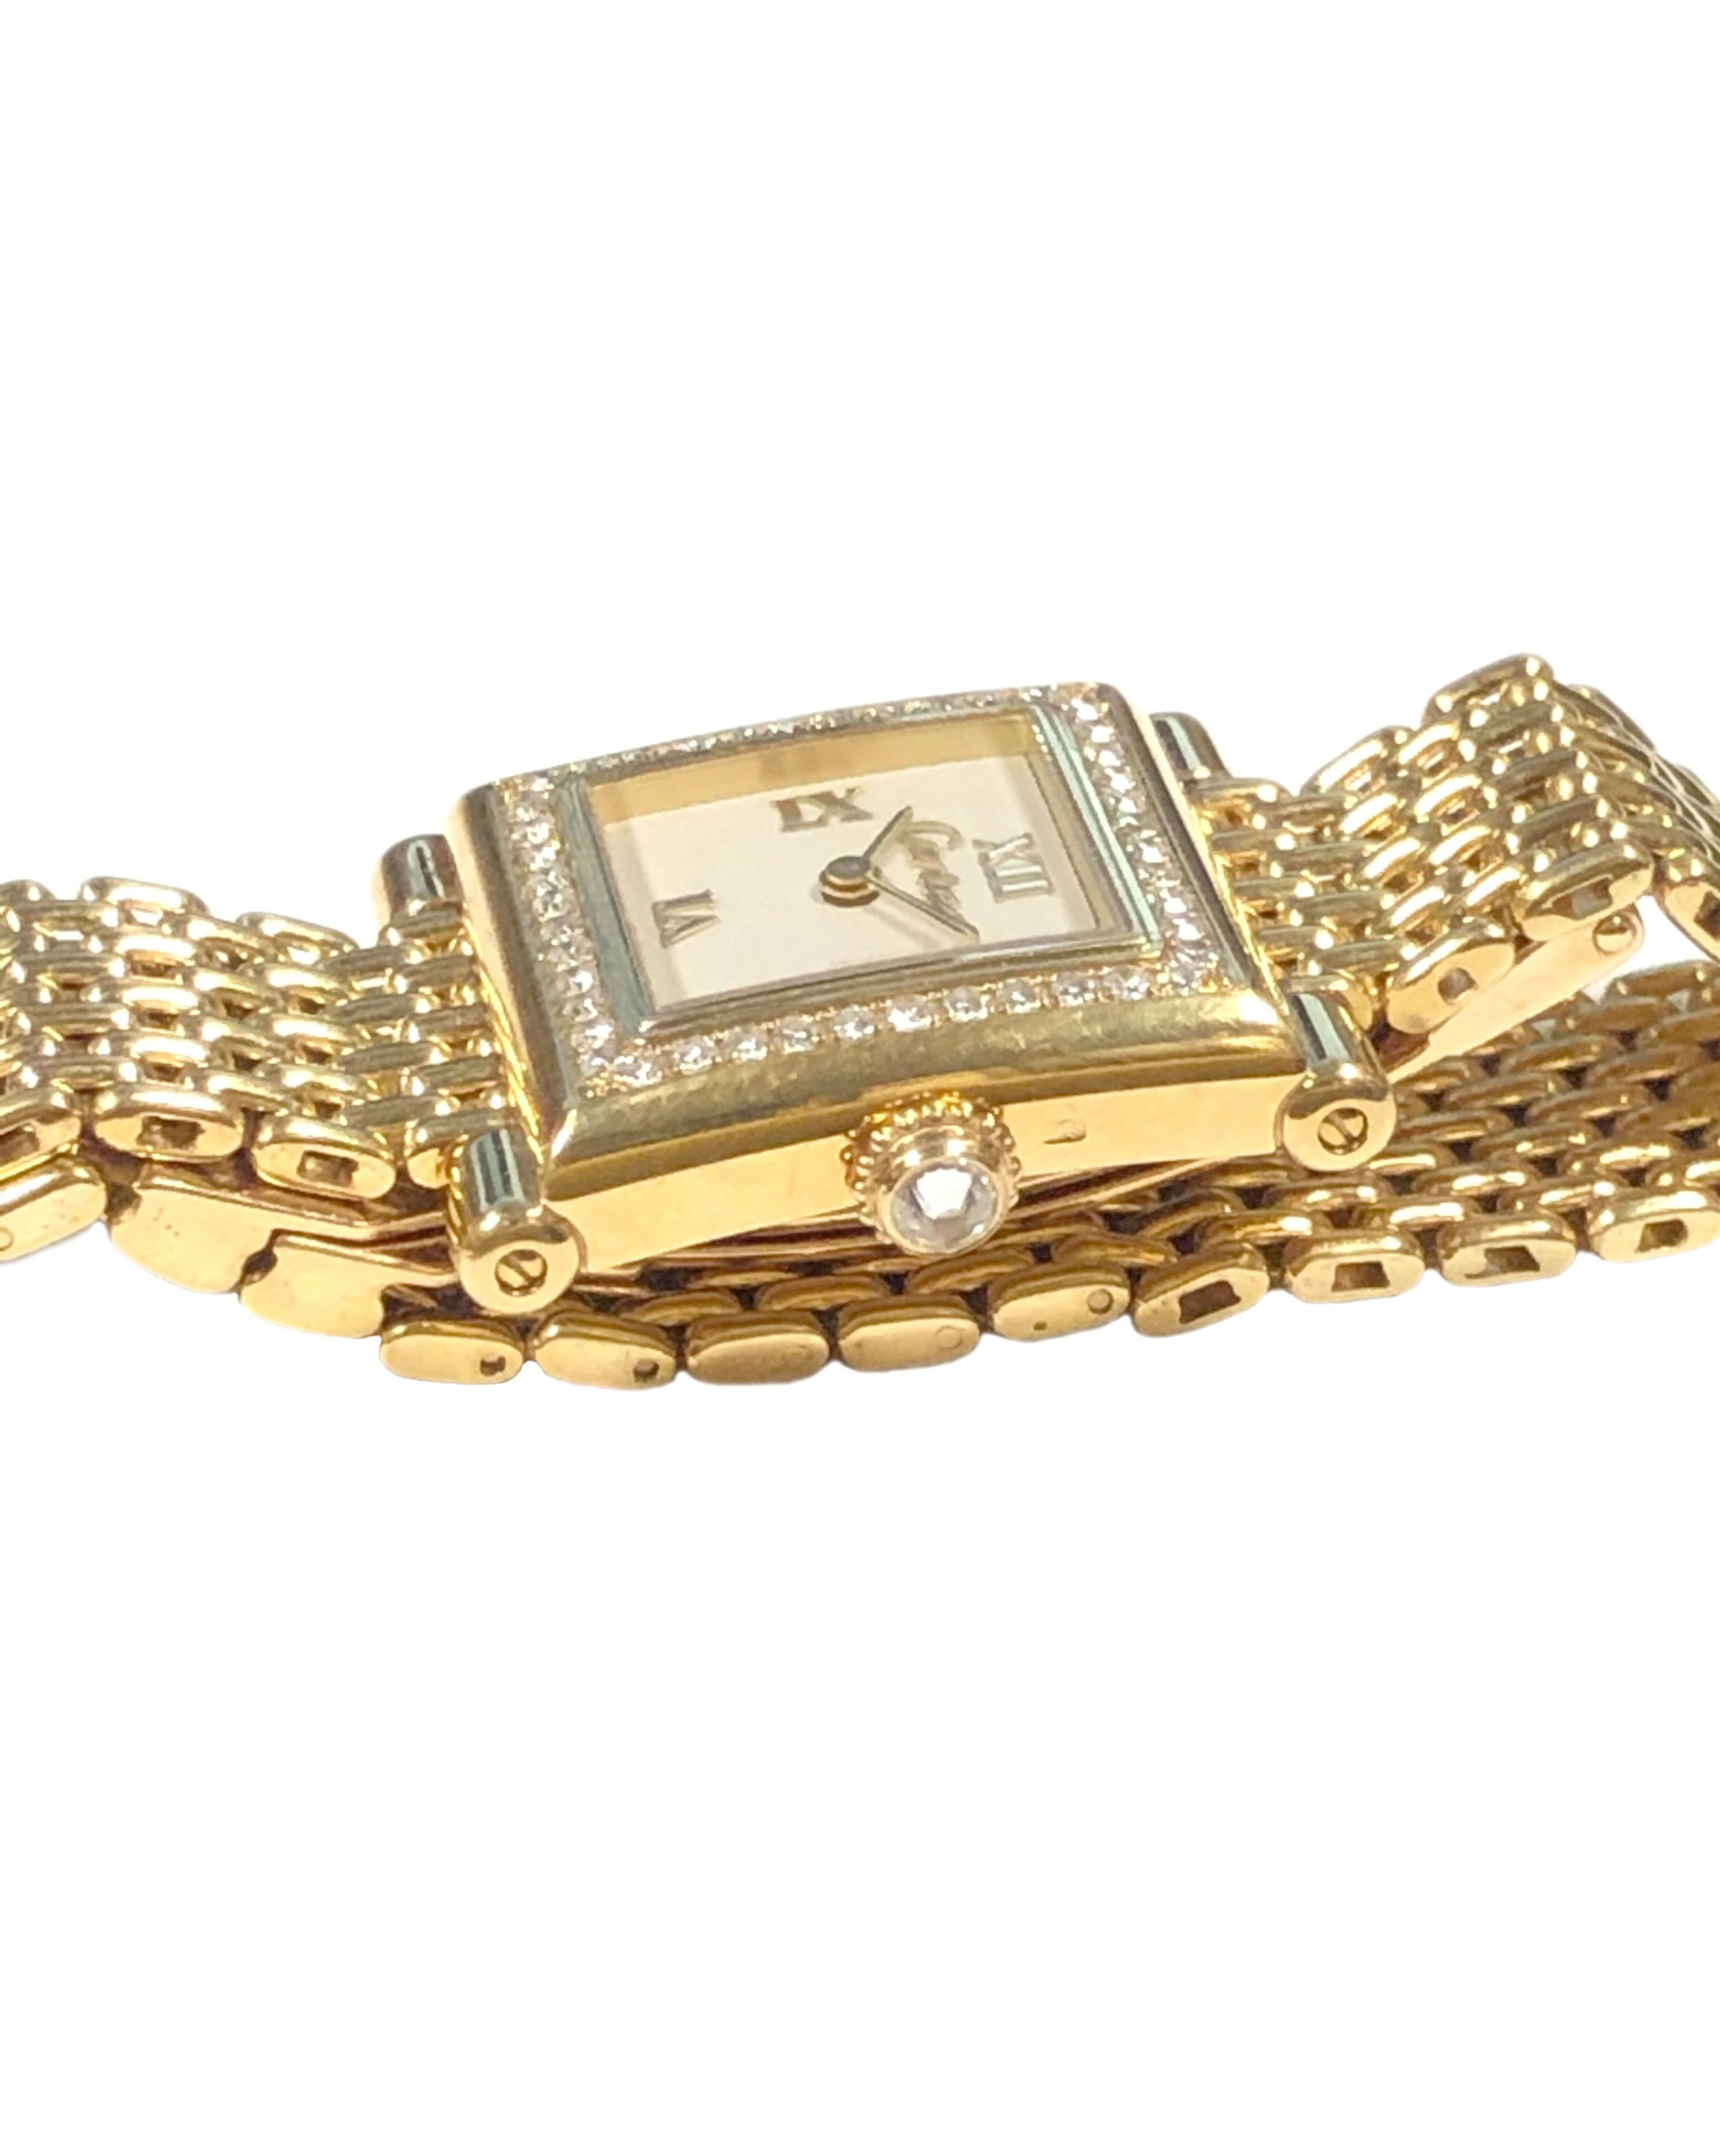 Circa 1987 Cartier Trocadero Ladies Wrist Watch, ce modèle était une offre très limitée également appelée Boutique collection et extrêmement difficile à trouver. 24 X 20 M-One. Boîtier 2 pièces en or jaune 18 carats avec lunette sertie de diamants